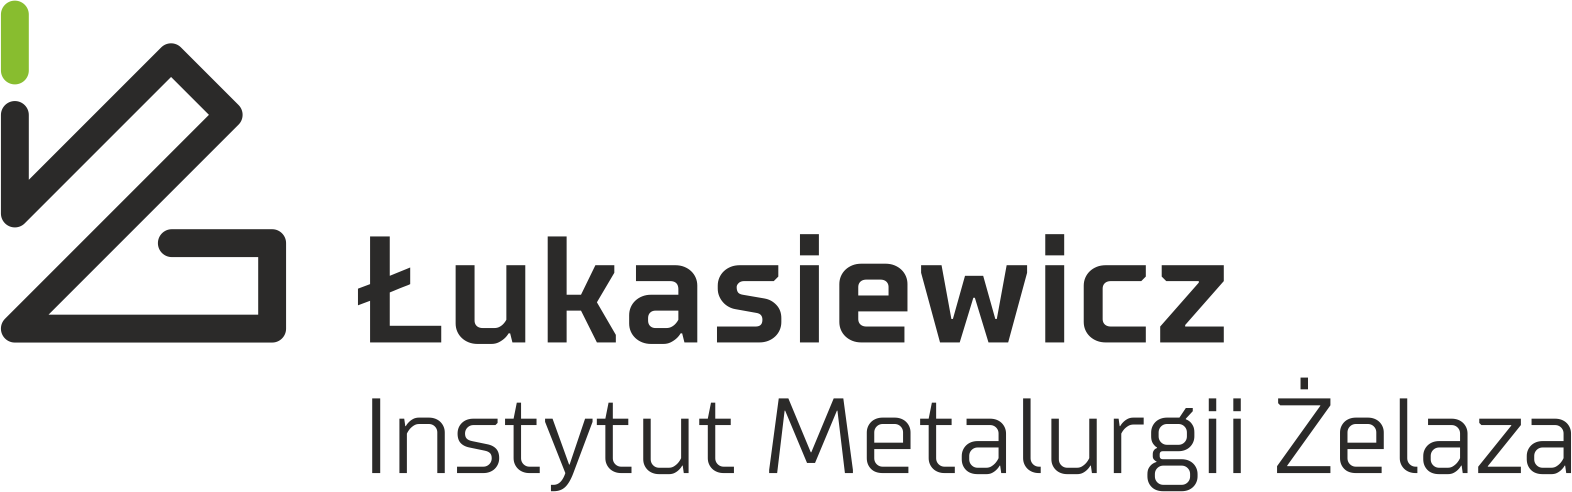  Łukasiewicz – Instytut Metalurgii Żelaza im. Stanisława Staszica